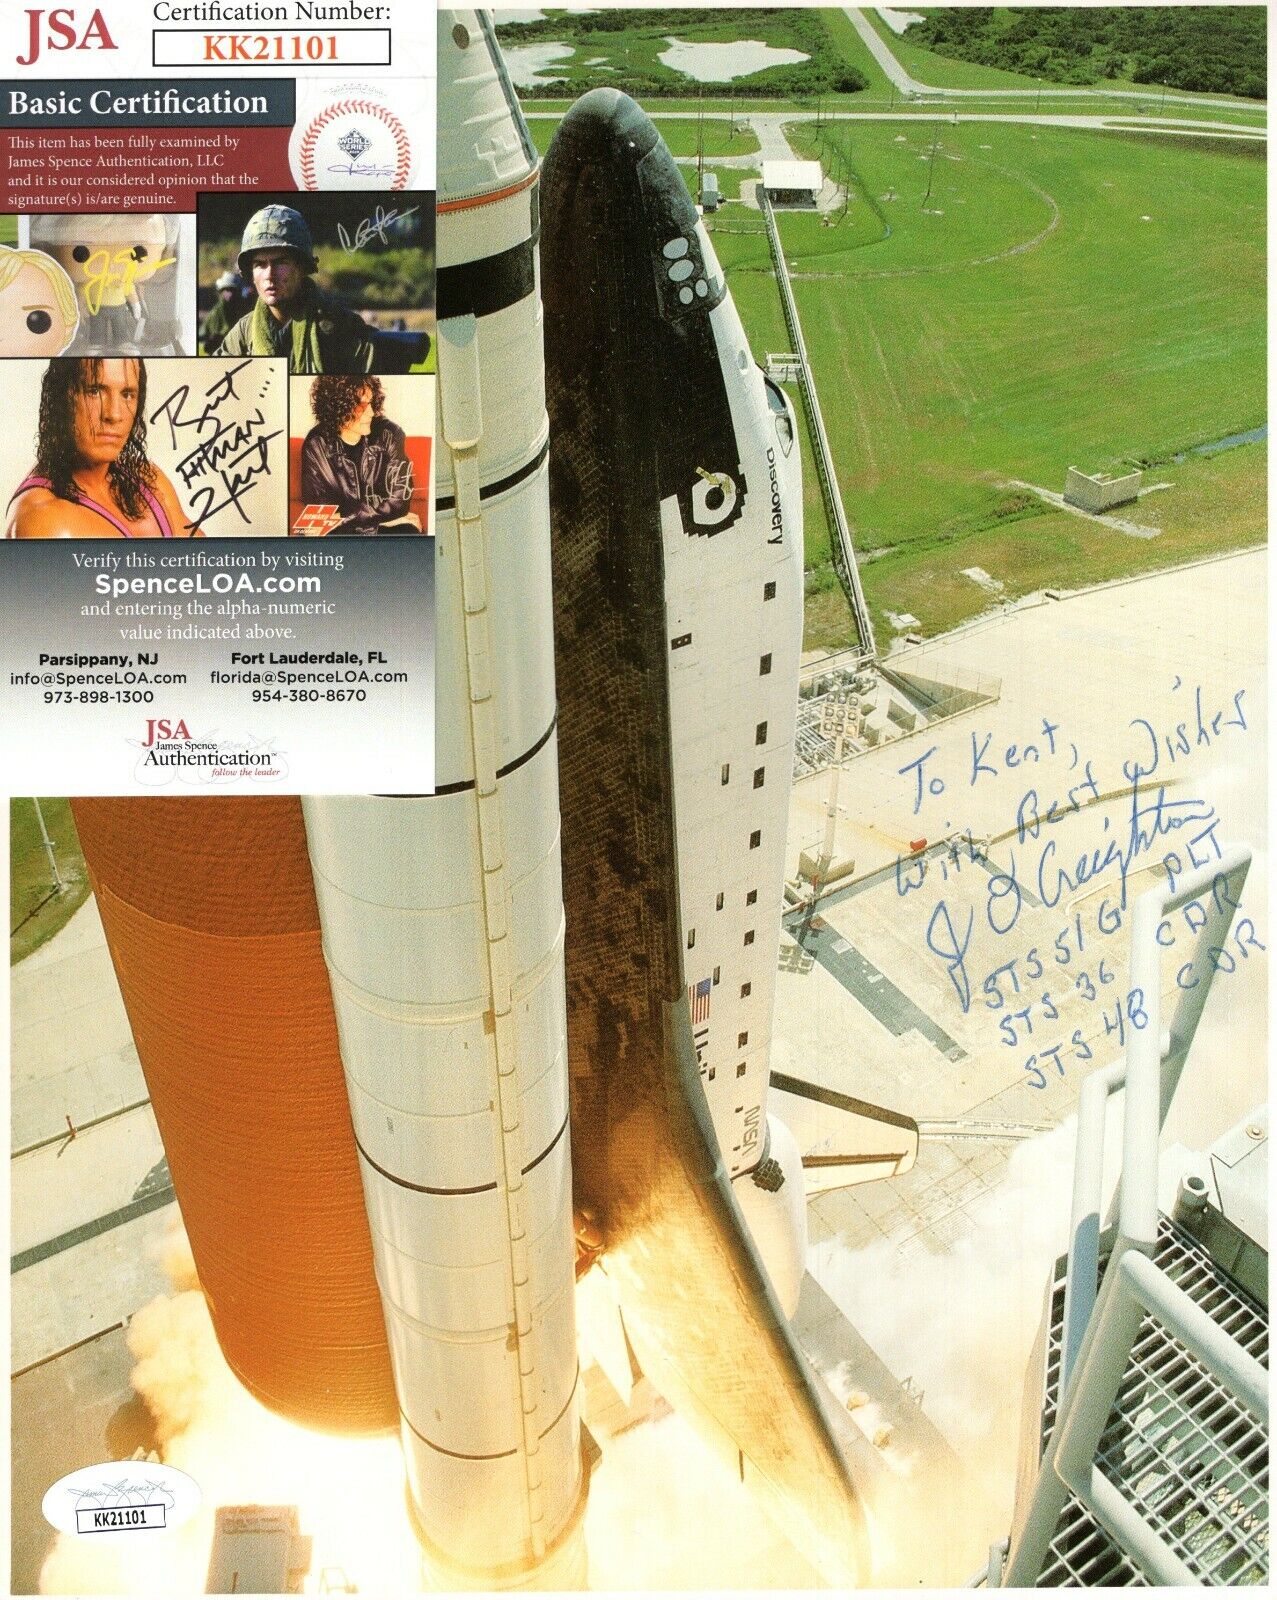 John Creighton NASA Astronaut Signed Autograph NASA Cardstock Photo Poster painting 8x10 JSA COA